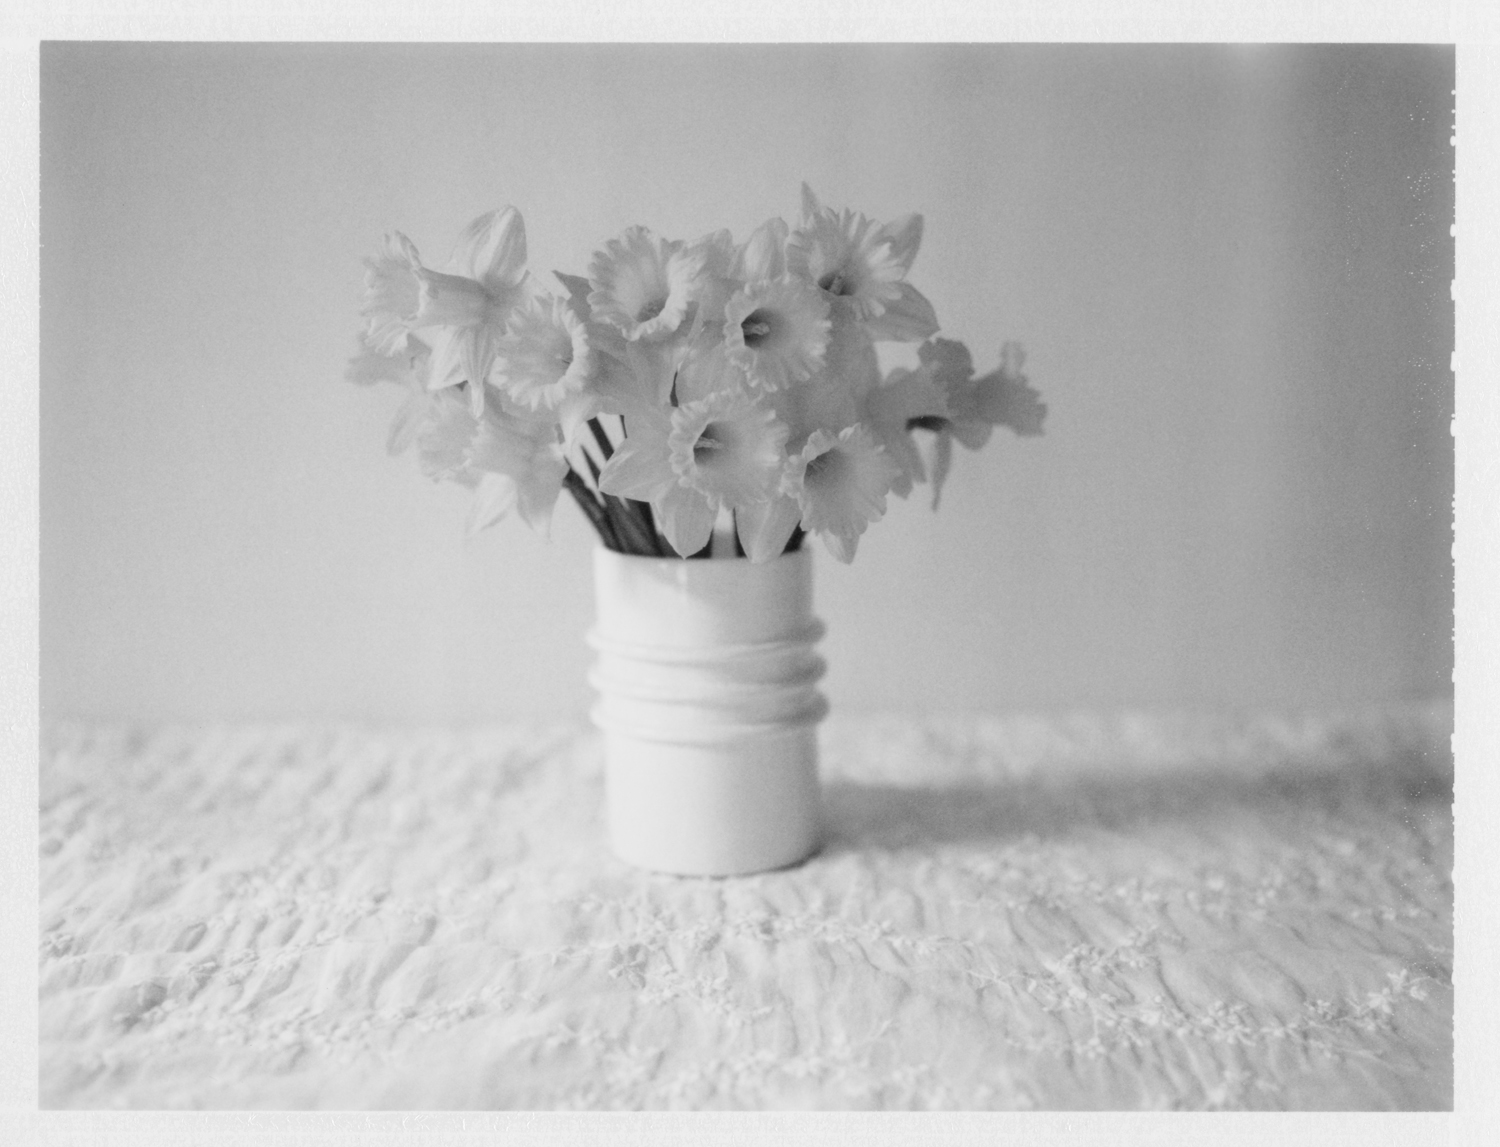  Daffodils. 2014. Archival Pigment Print. 6" x 8" 